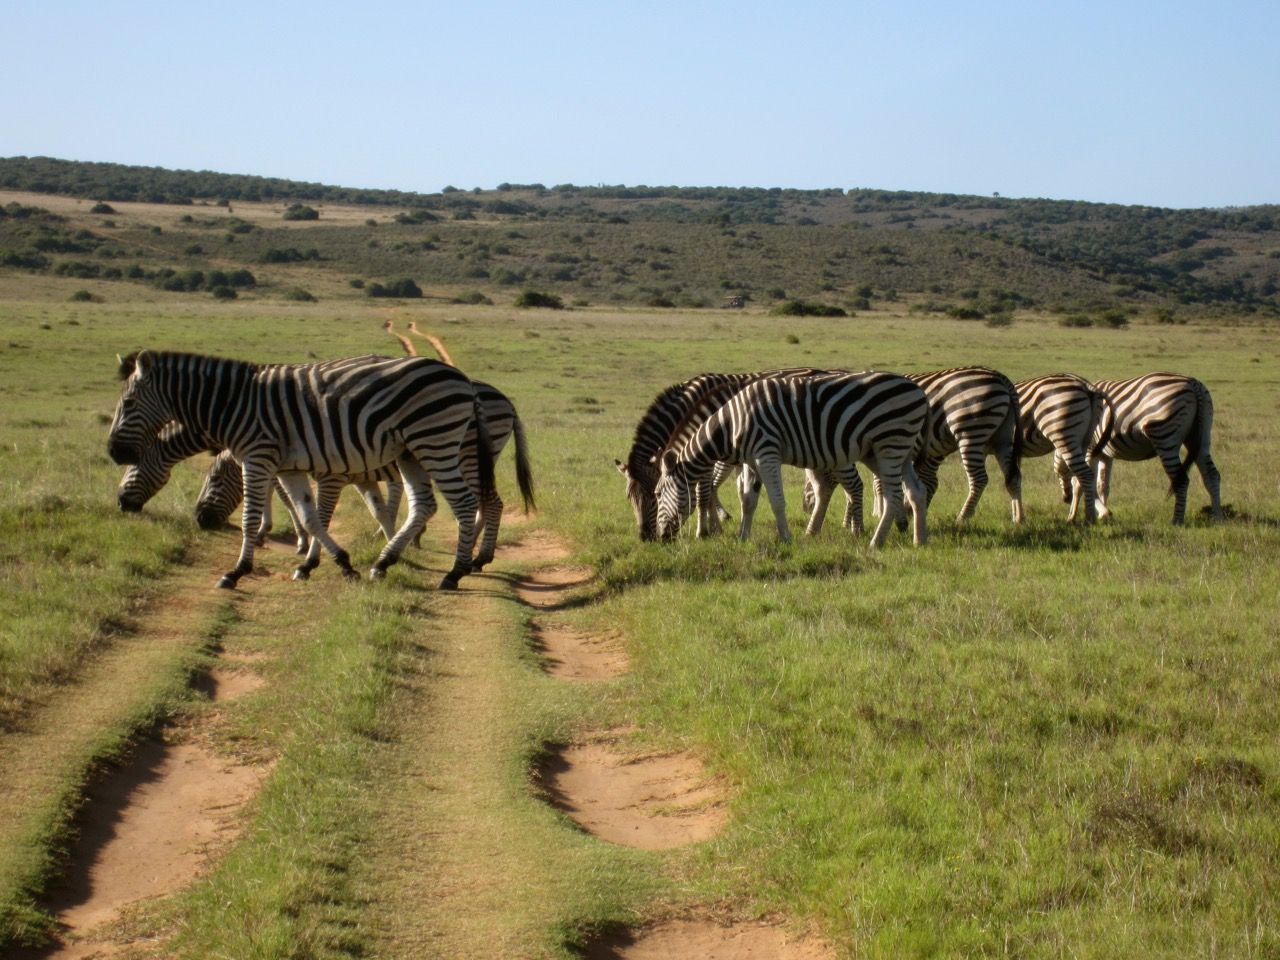 Zebras grazing in a field.